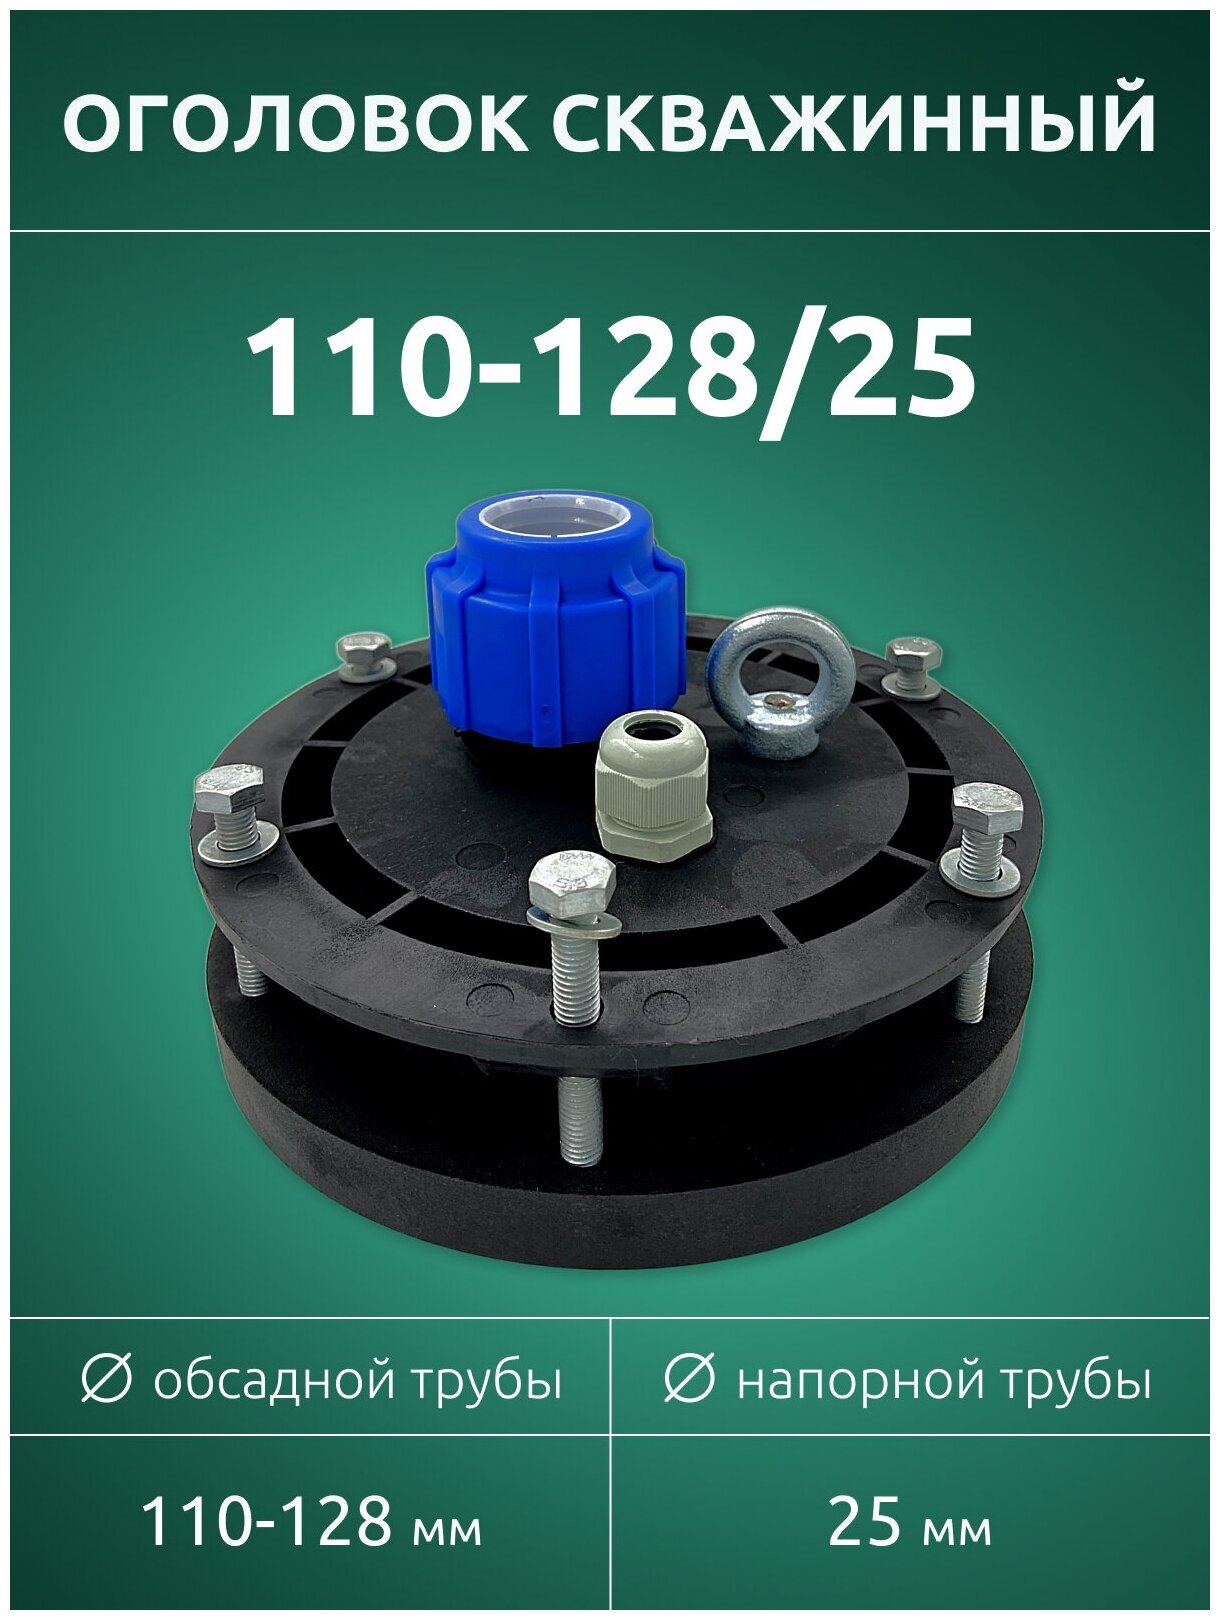 Оголовок скважинный ОГС 110-128/25 мм